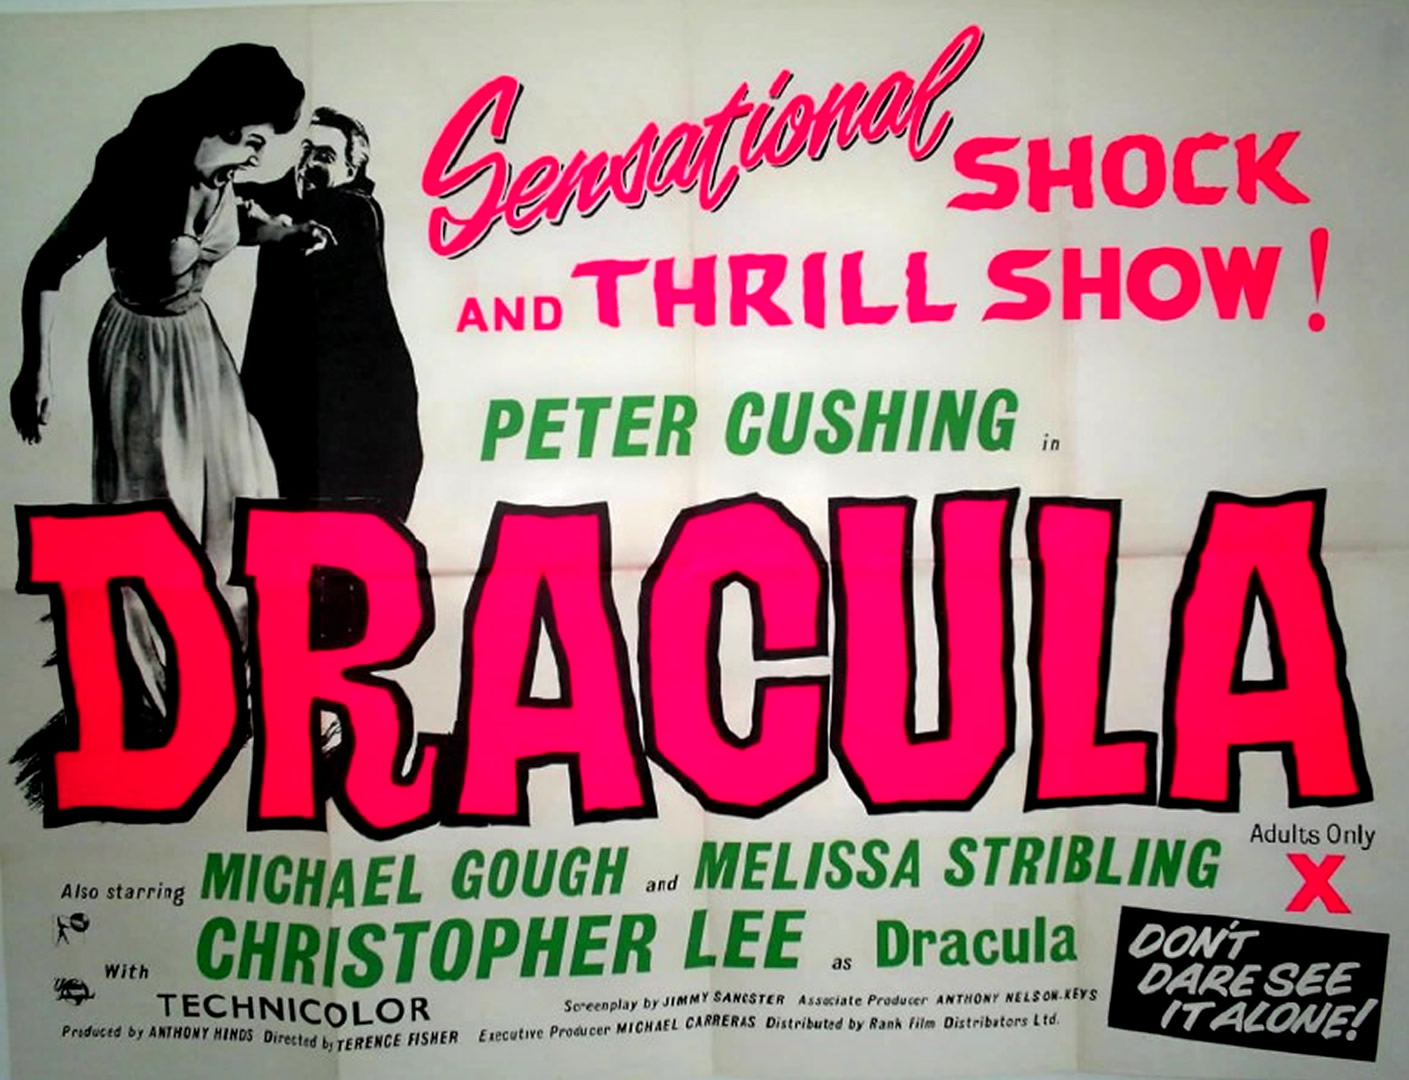 Dracula Vintage Wallpapers